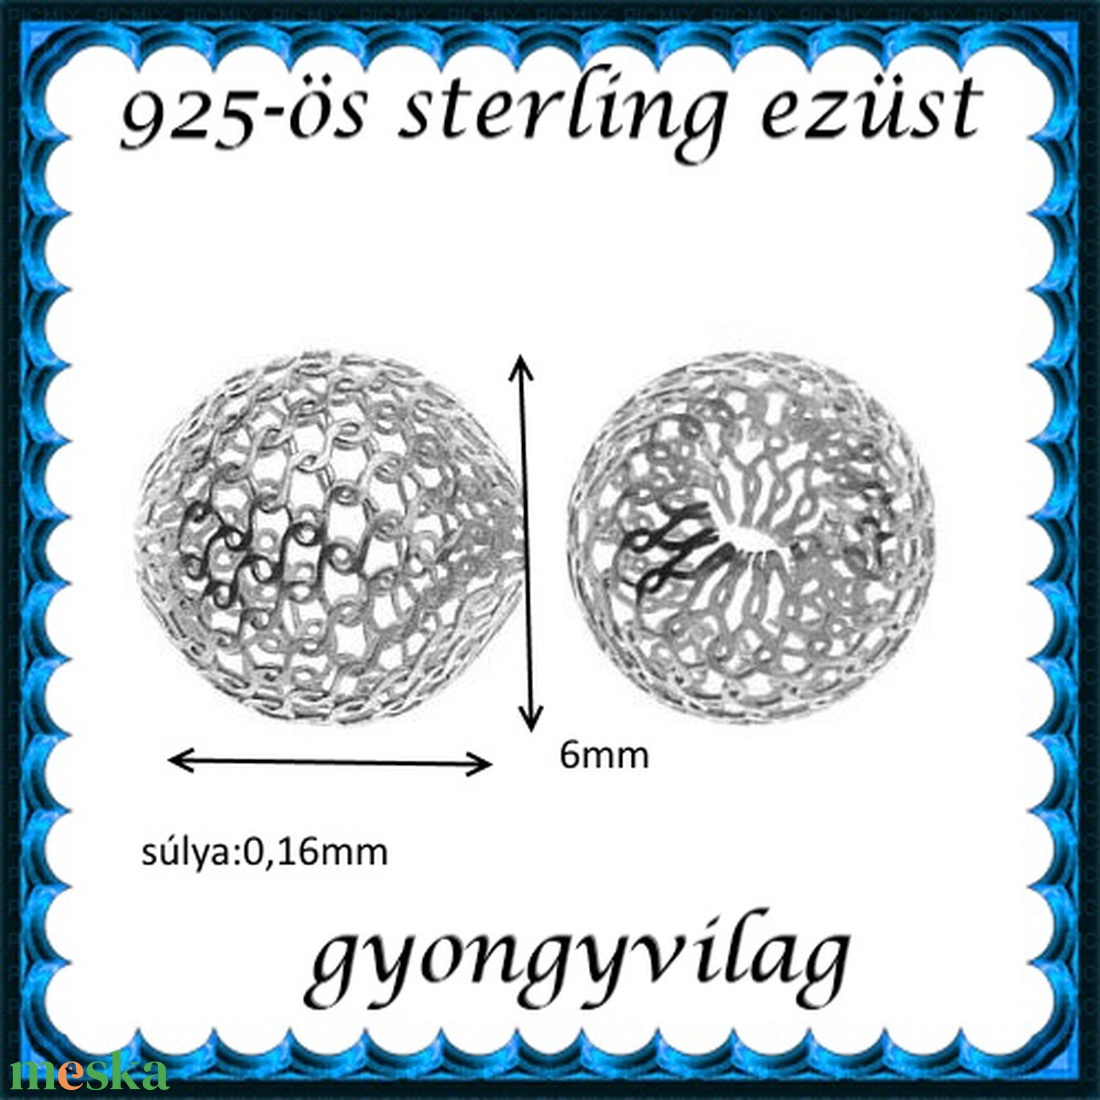 925-ös sterling ezüst ékszerkellék: köztes / gyöngy / dísz EKÖ 26-6 - gyöngy, ékszerkellék - fém köztesek - Meska.hu